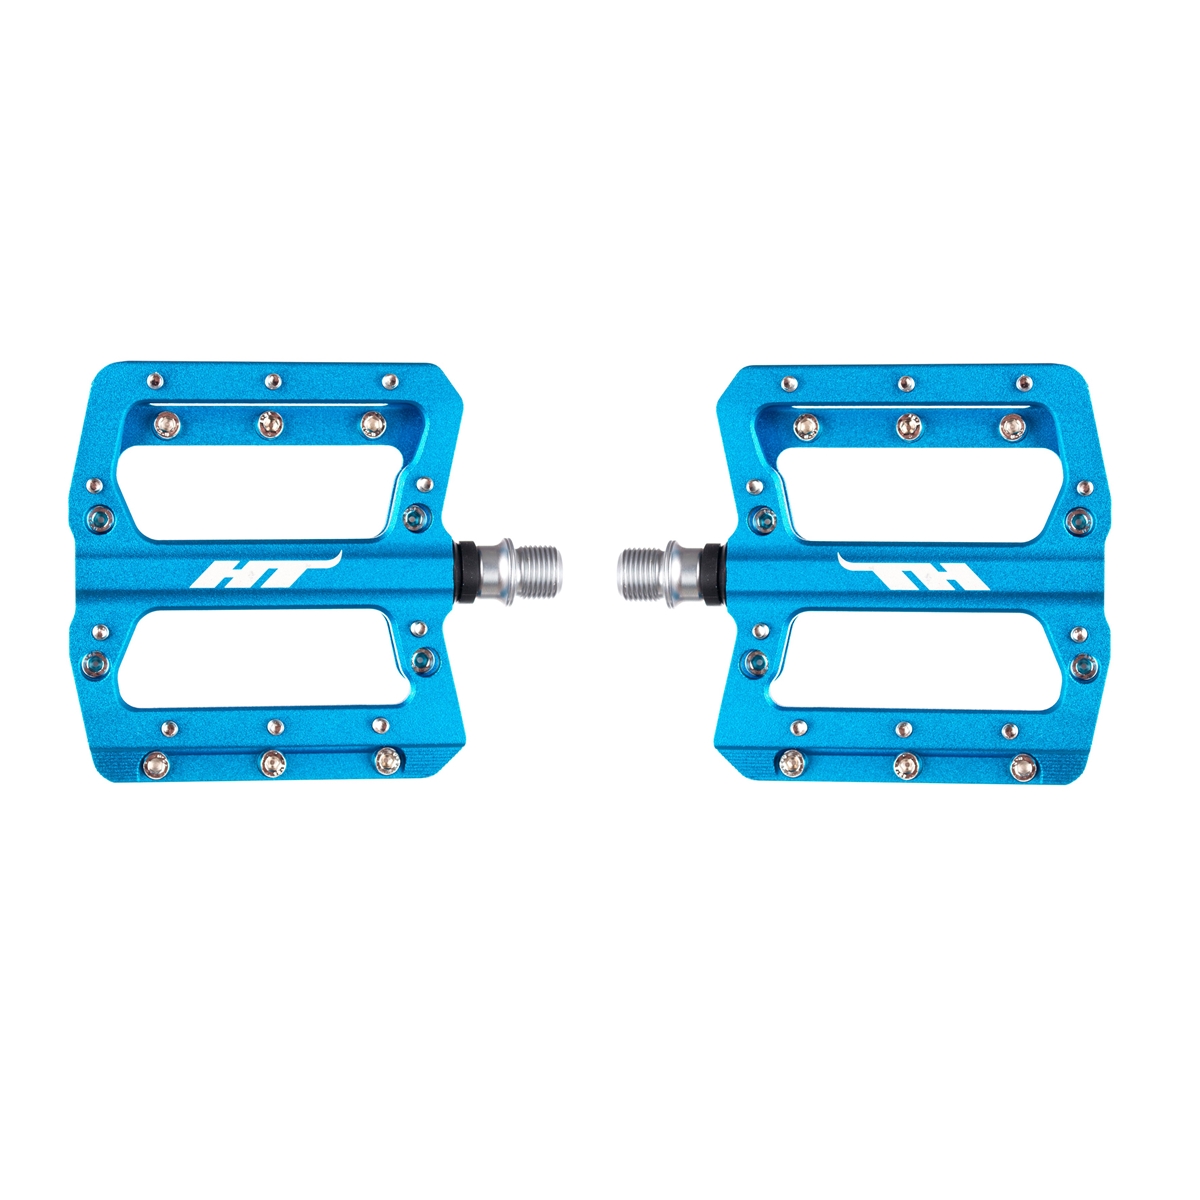 AN14A flat pedals blue marine